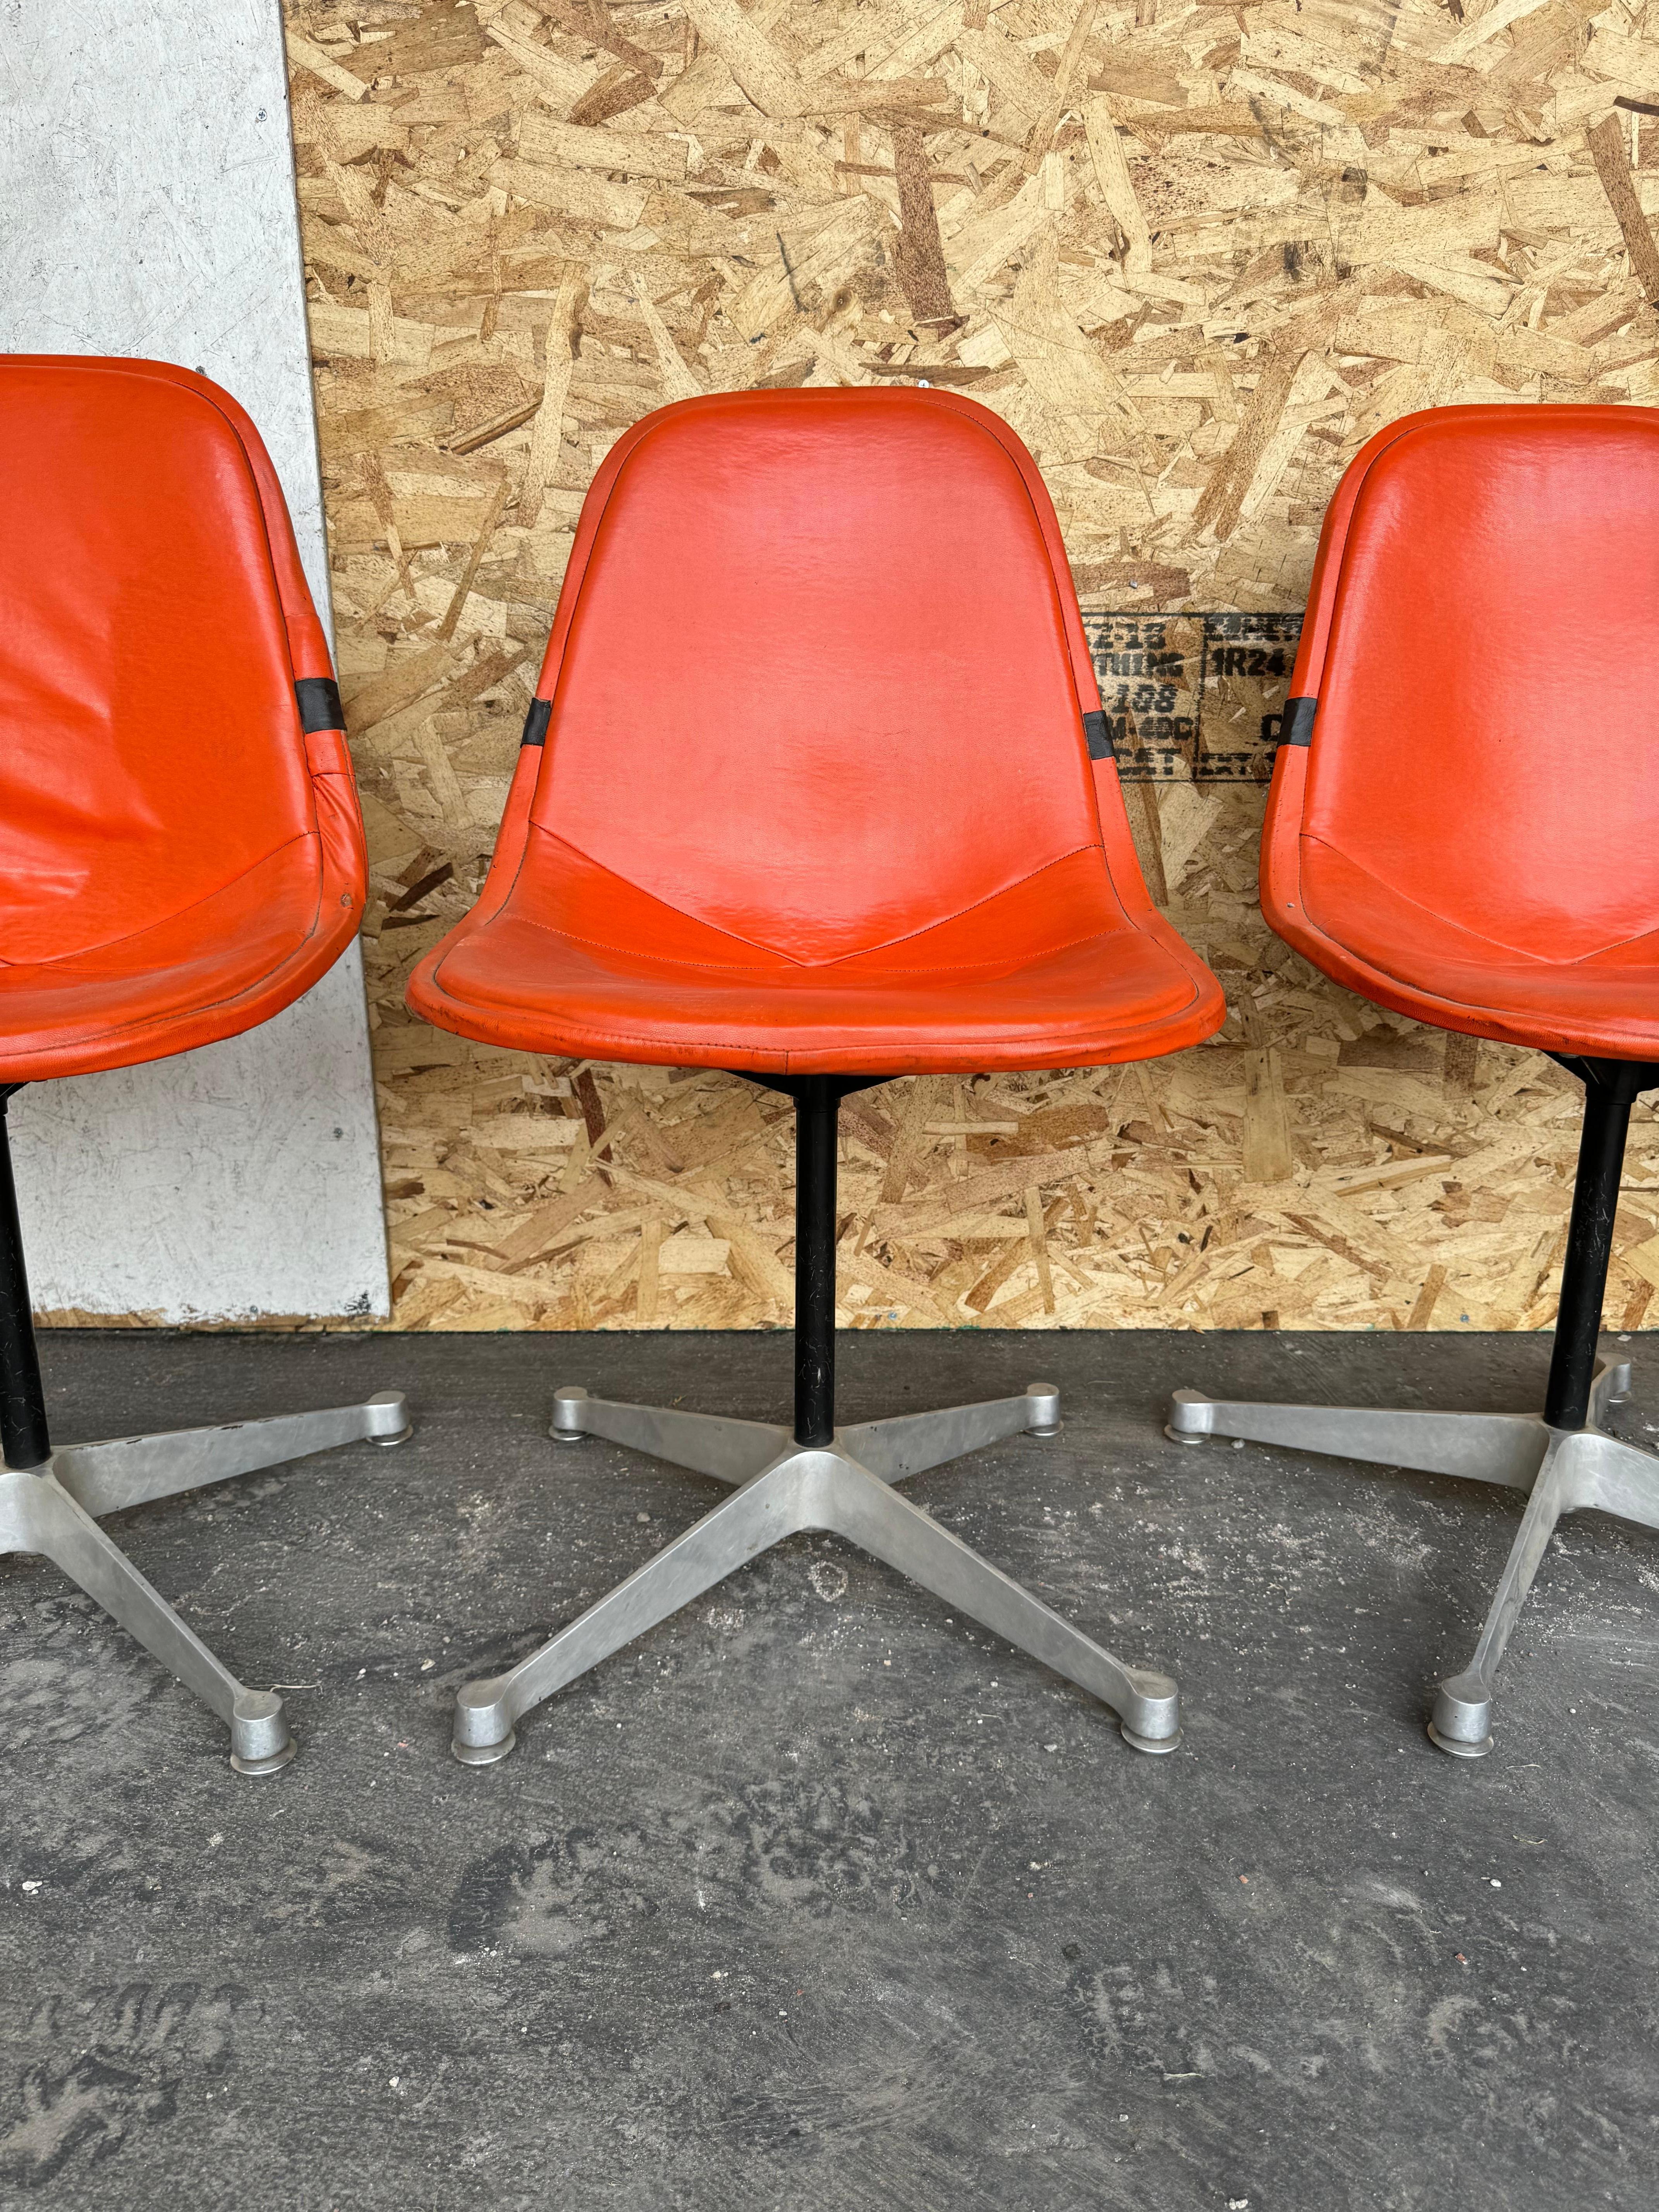 Satz von 4 Frühe Produktion  Herman Miller entworfen von Charles Eames... Orange Pad Swivel PKC1 Aluminium Basis Dining Chairs.Nice ursprünglichen Zustand, kleinere Flecken auf Naugahyde (siehe Foto) Classic Mid Century Modern Design.. perfekt für